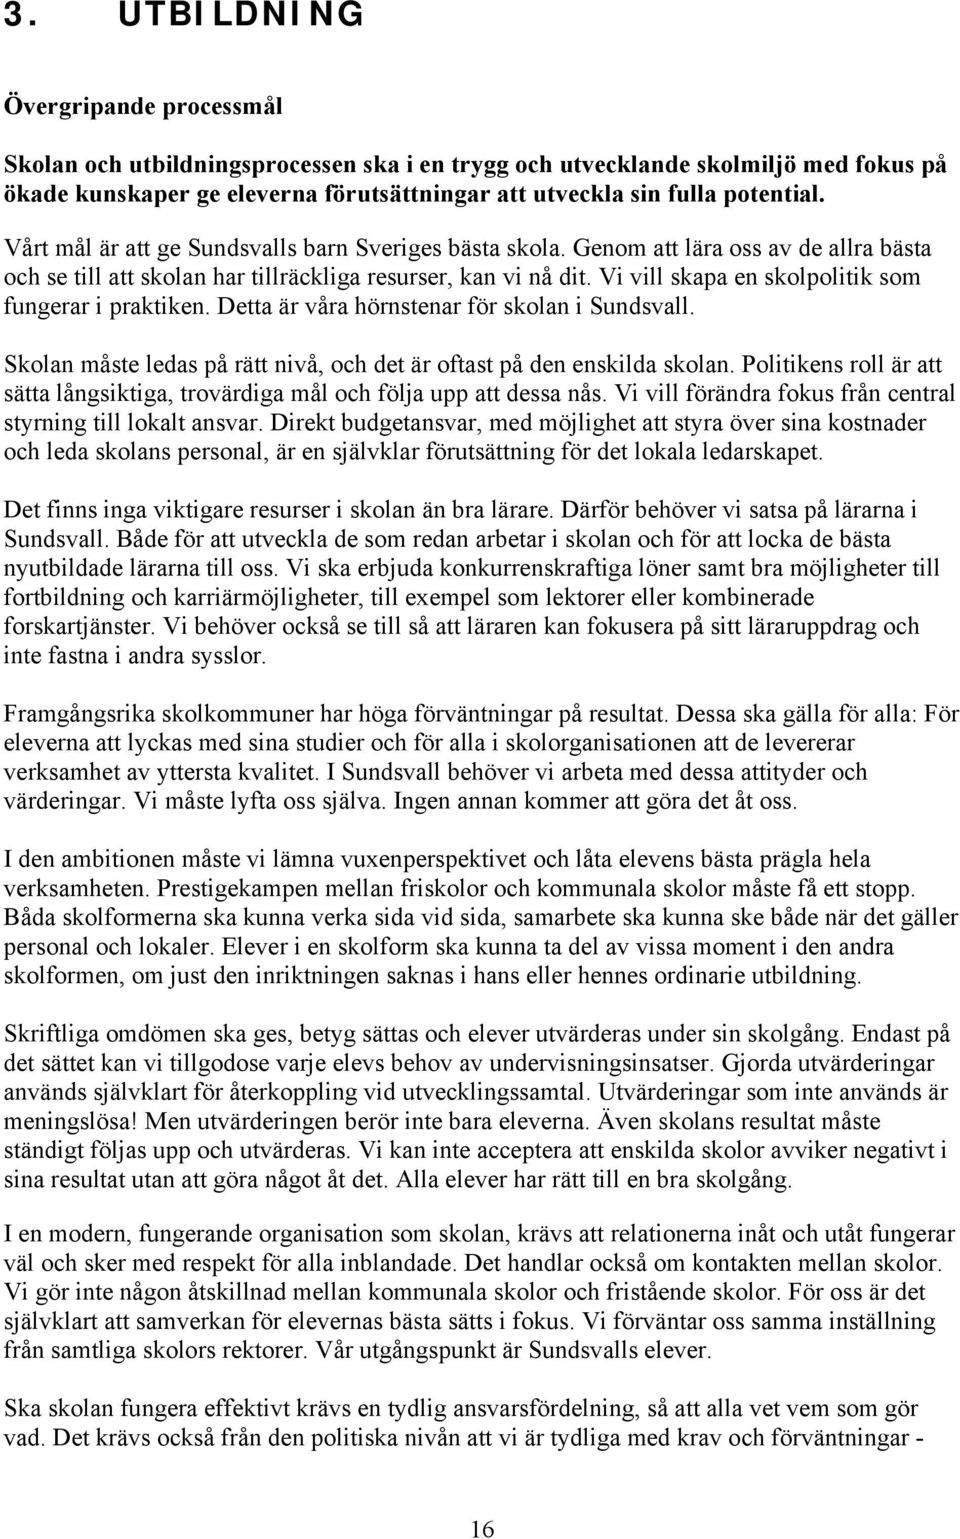 Vi vill skapa en skolpolitik som fungerar i praktiken. Detta är våra hörnstenar för skolan i Sundsvall. Skolan måste ledas på rätt nivå, och det är oftast på den enskilda skolan.